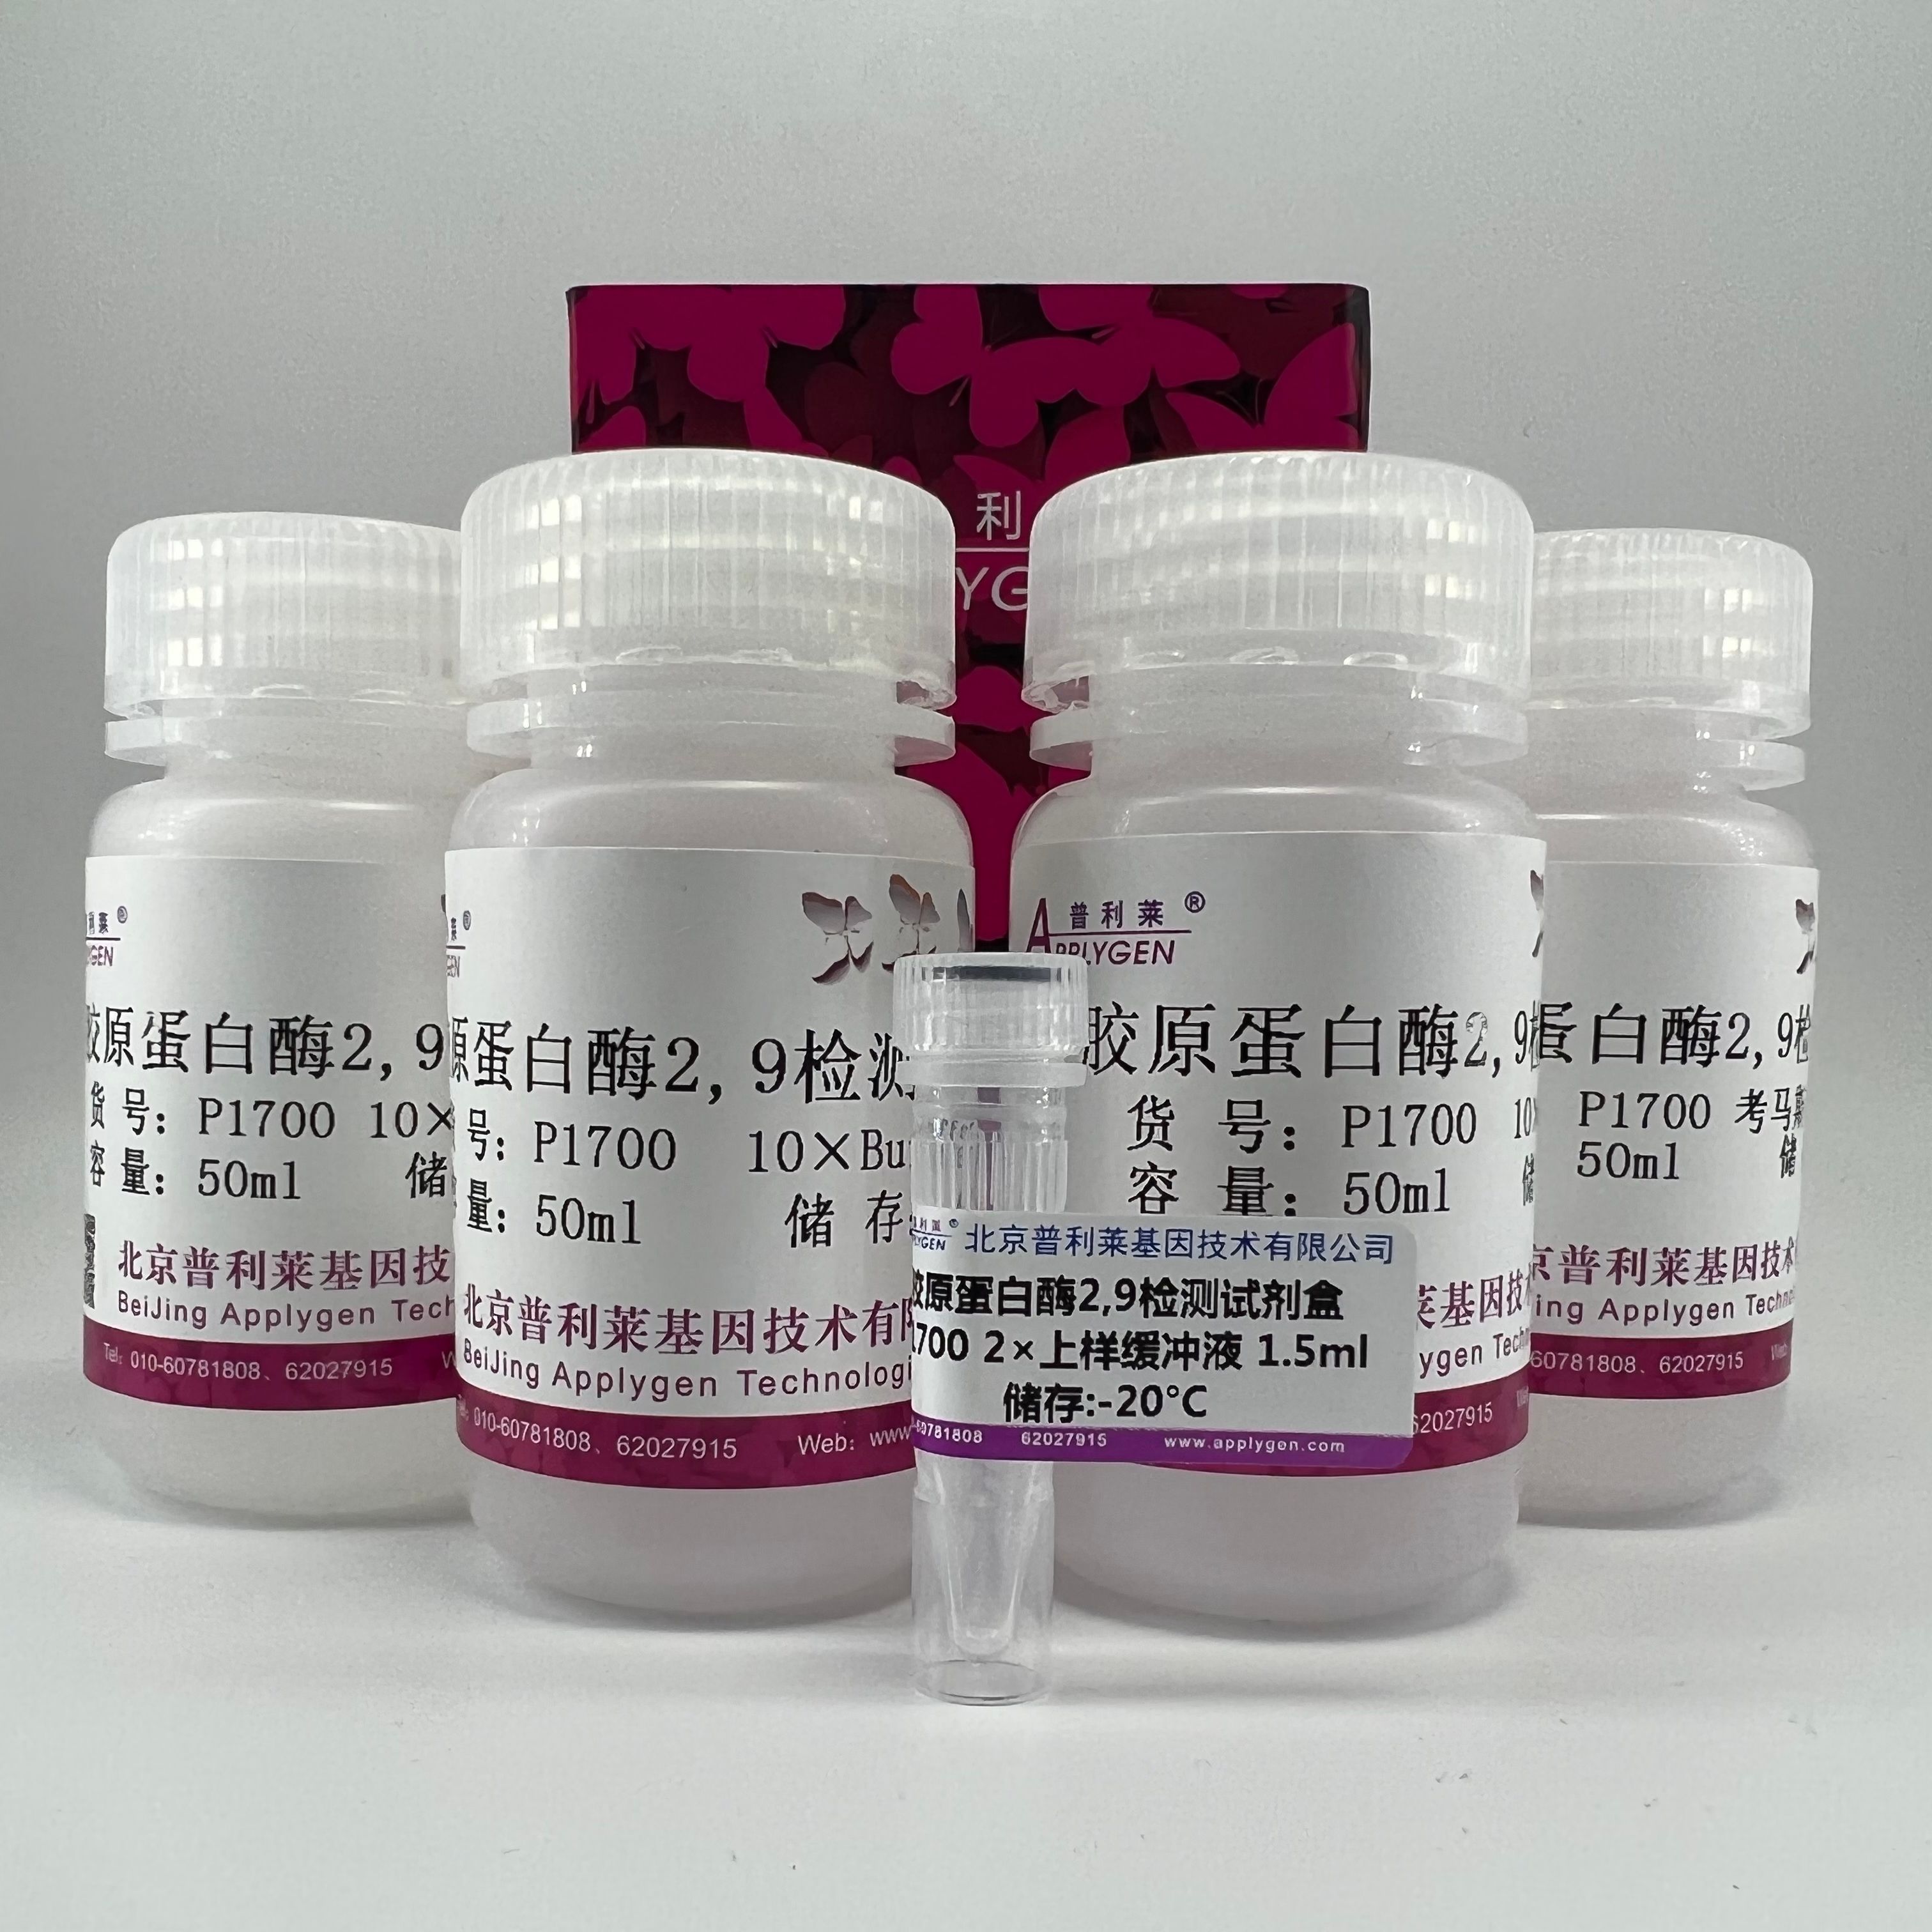 胶原蛋白酶2,9检测试剂盒(MMPZymographyAssayKit)   P1700  厂家直销，提供OEM定制服务，大包装更优惠 